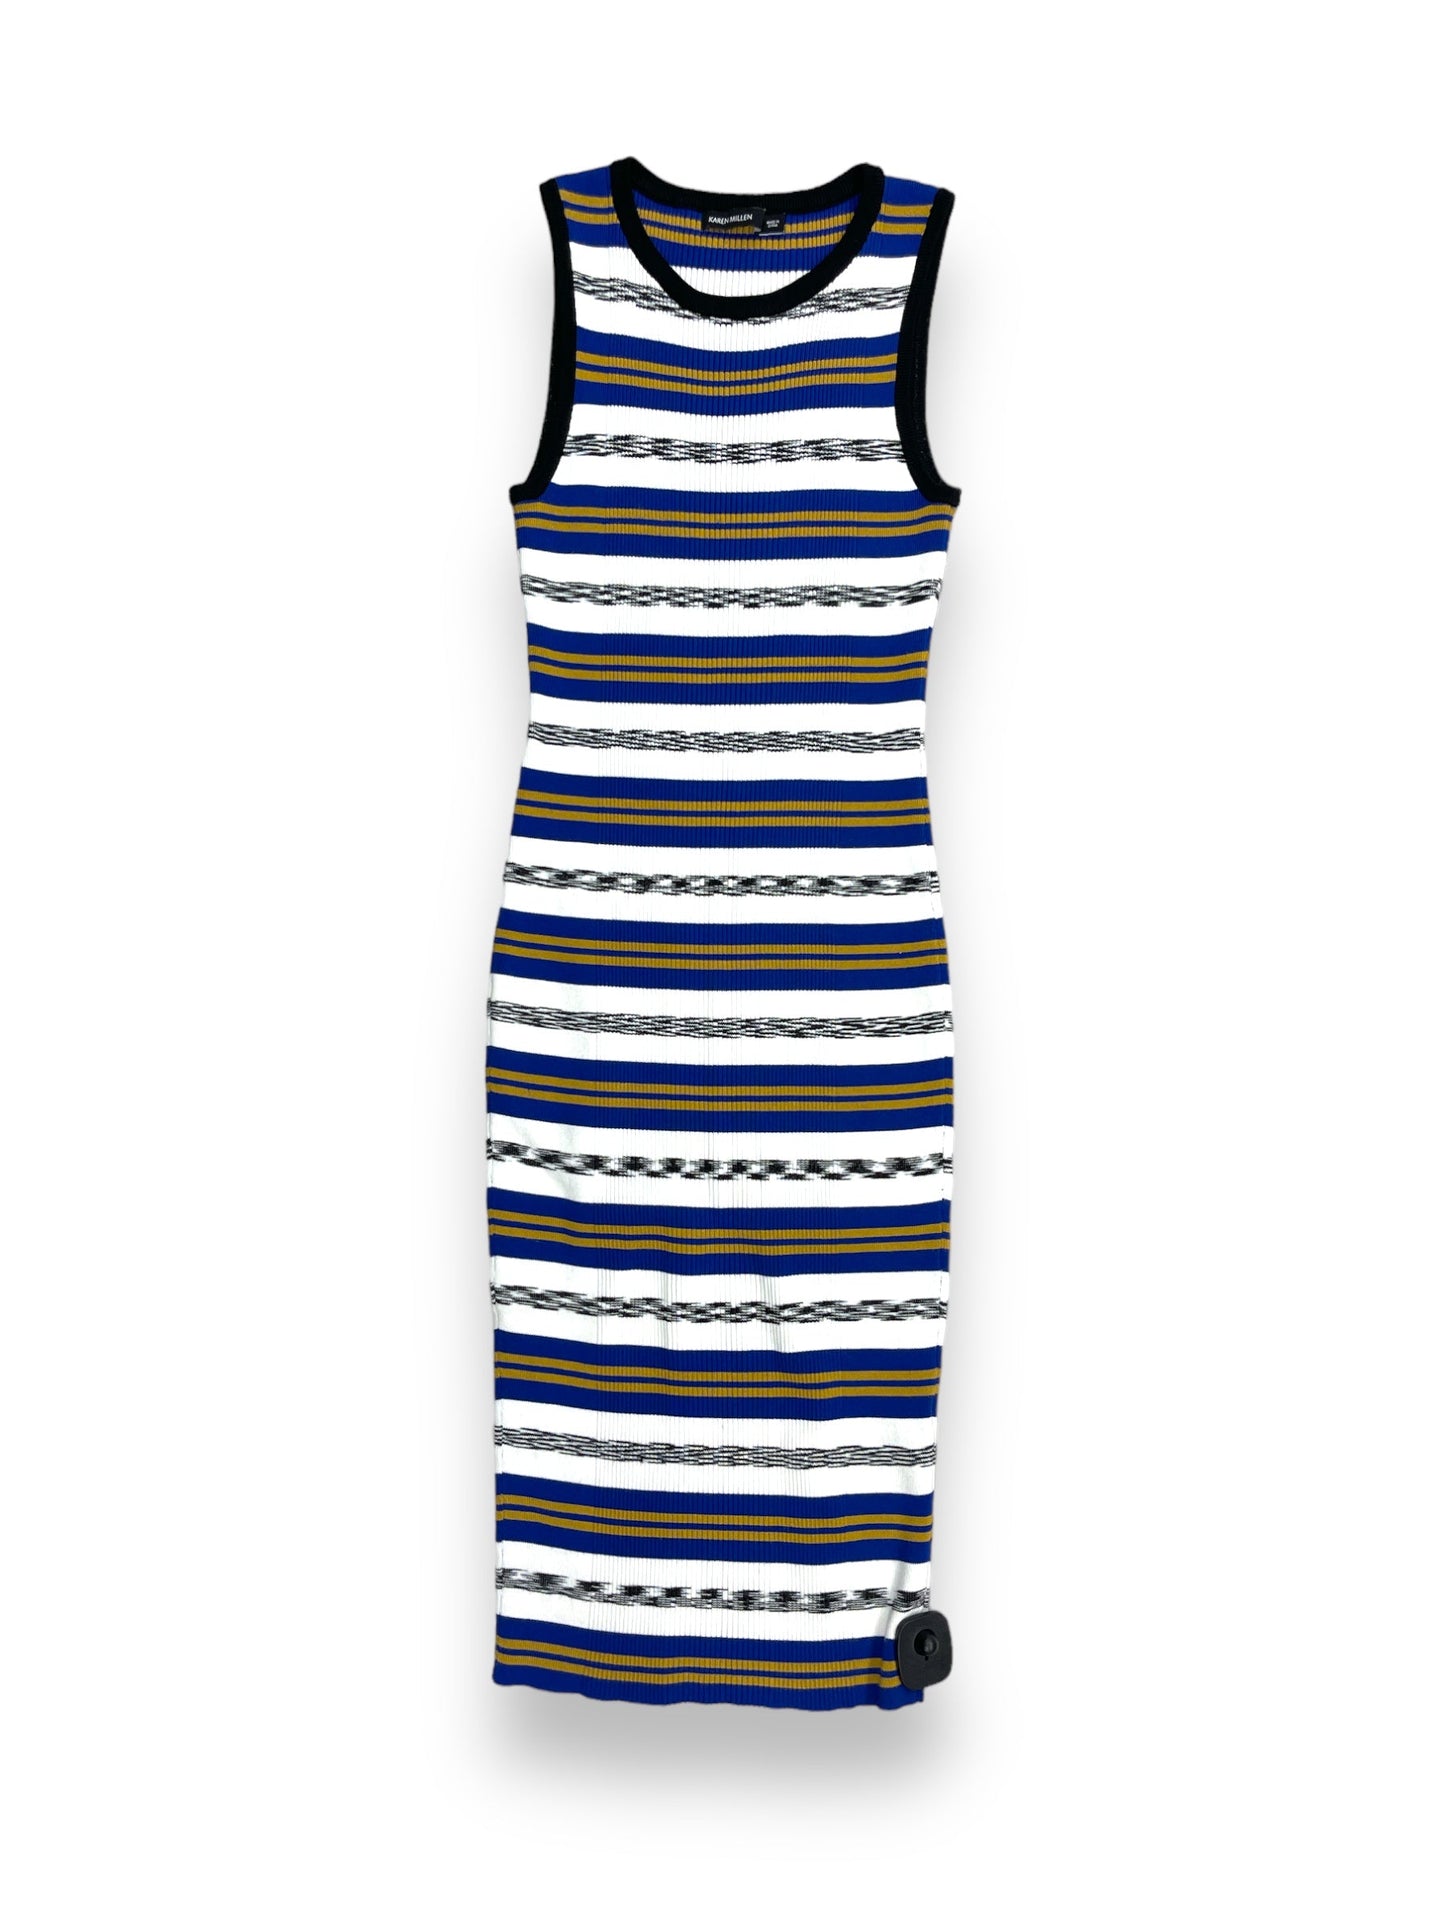 Dress Casual Maxi By Karen Millen  Size: S